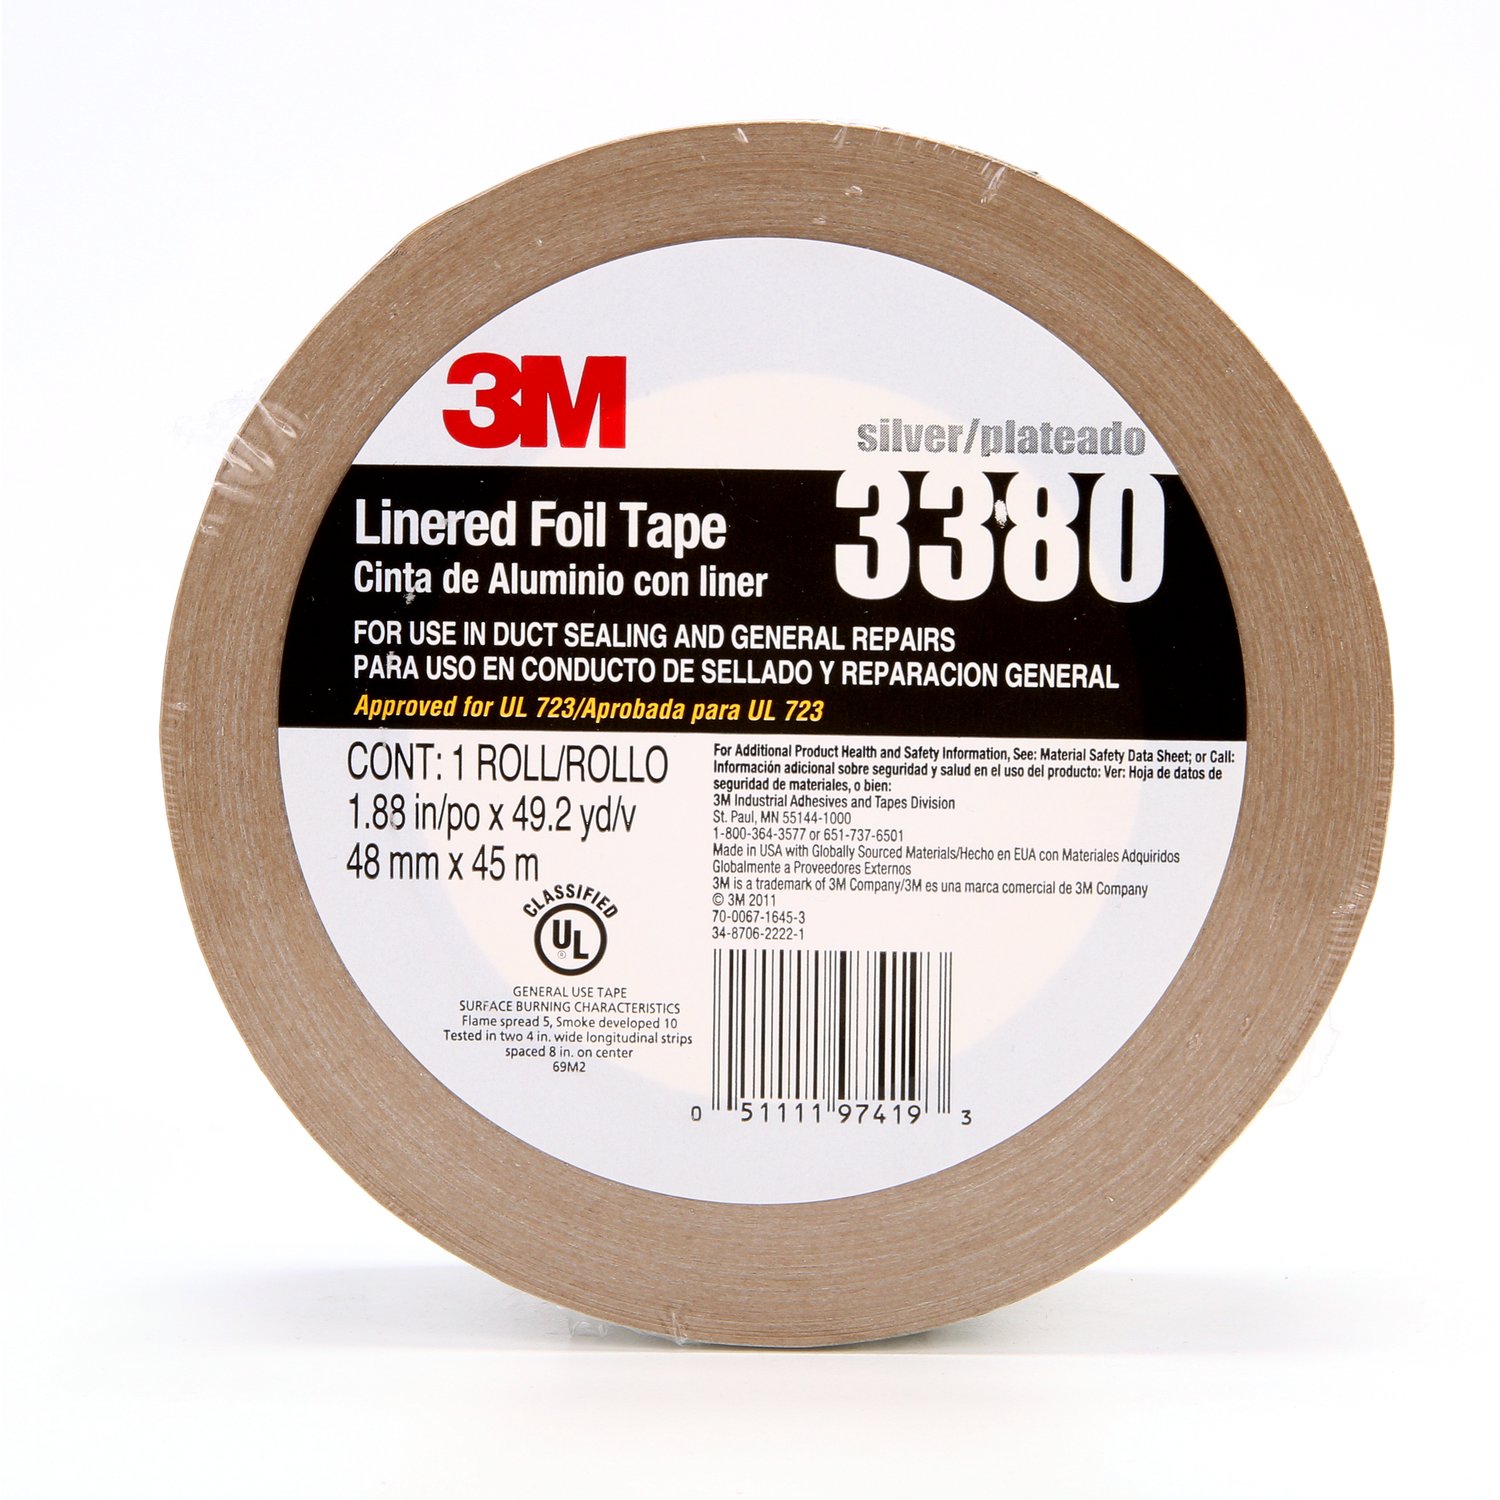 7000049613 - 3M Aluminum Foil Tape 3380, Silver, 48 mm x 45 m, 3.25 mil, 24
Rolls/Case